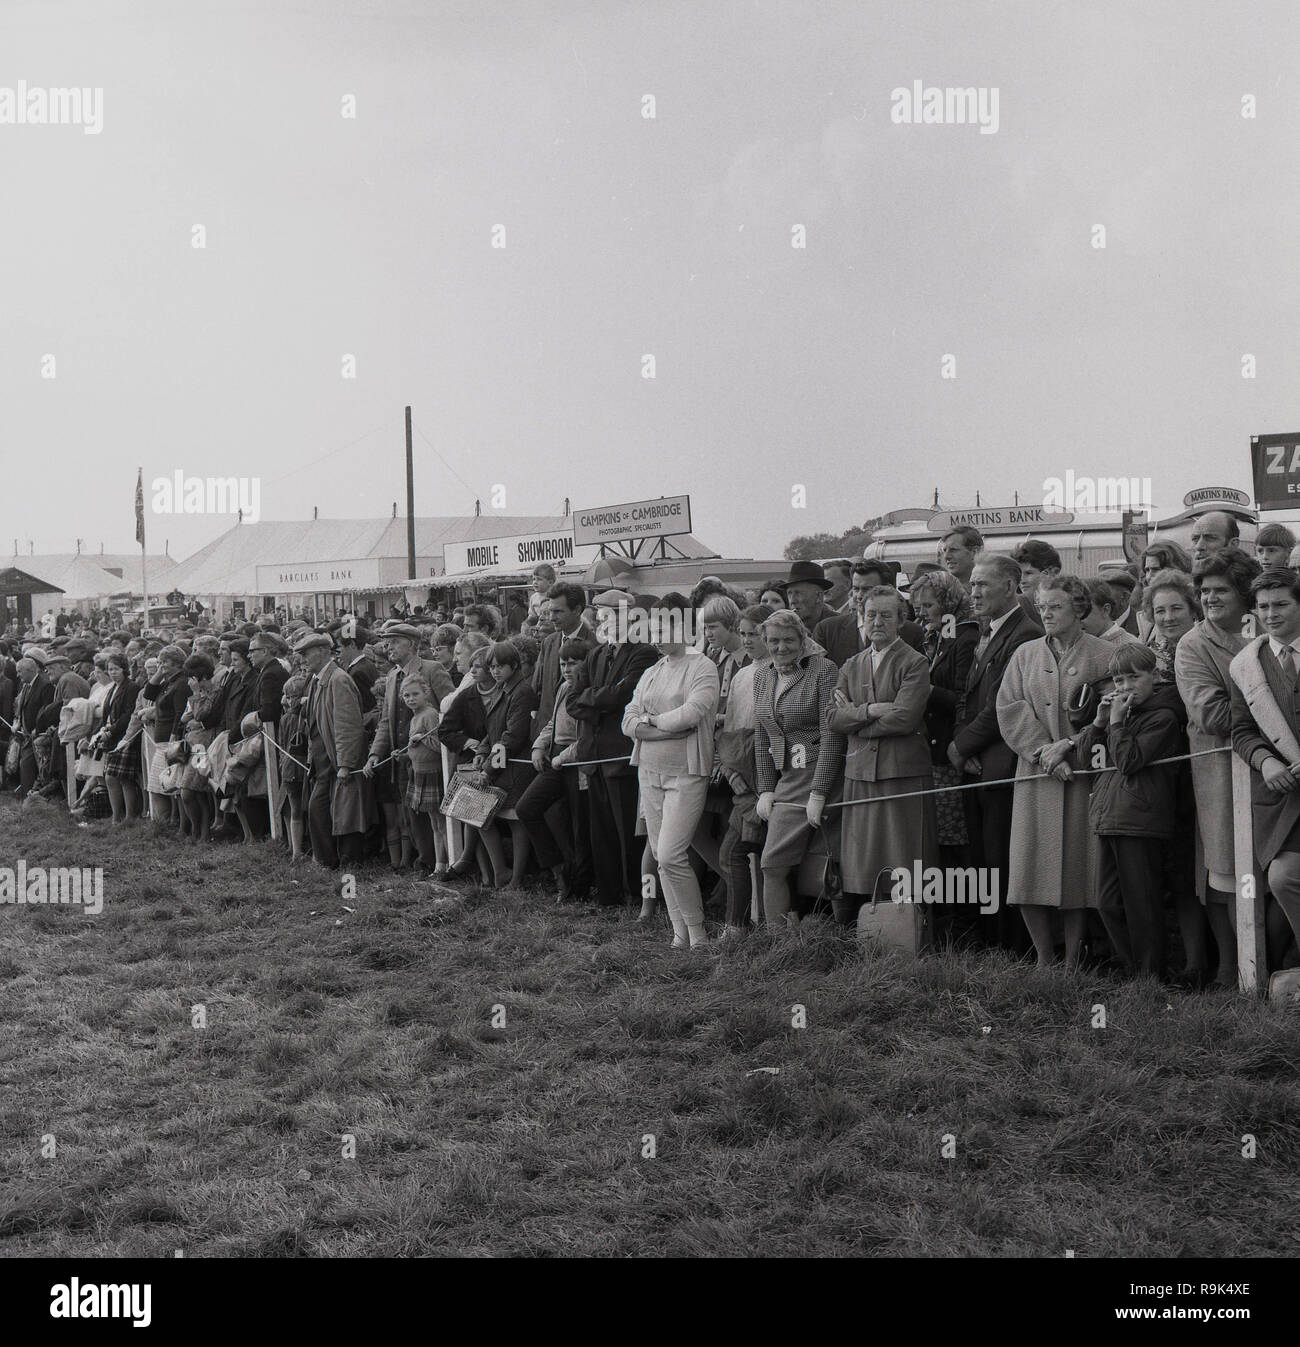 1967, Besucher der Thame, Oxfordshire, die größte eintägige Agricultural Show in Großbritannien, stehen in einem Feld hinter einem Seil beobachten das Verfahren, die möglicherweise ein Pferd bei, England, UK. Stockfoto